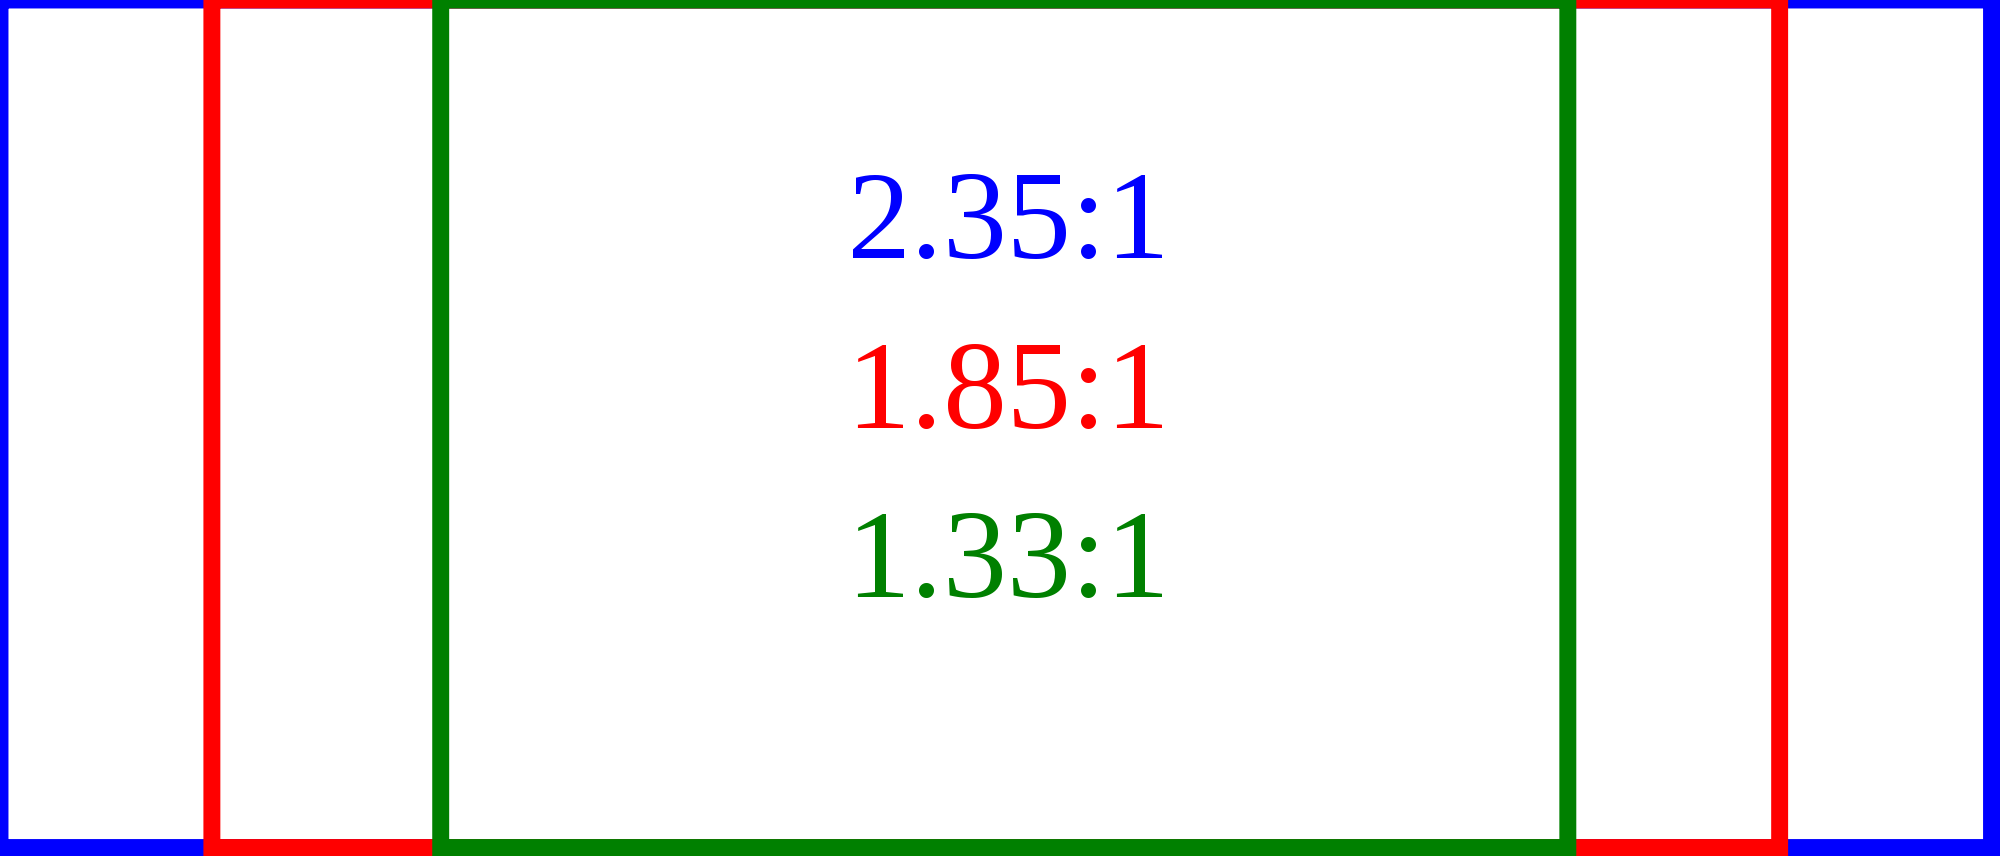 2 1 78. Соотношение сторон экрана 2.35:1. Соотношение сторон 2 35 1 разрешение. Формат кадра 2,35:1. 1.85:1 Соотношение сторон.